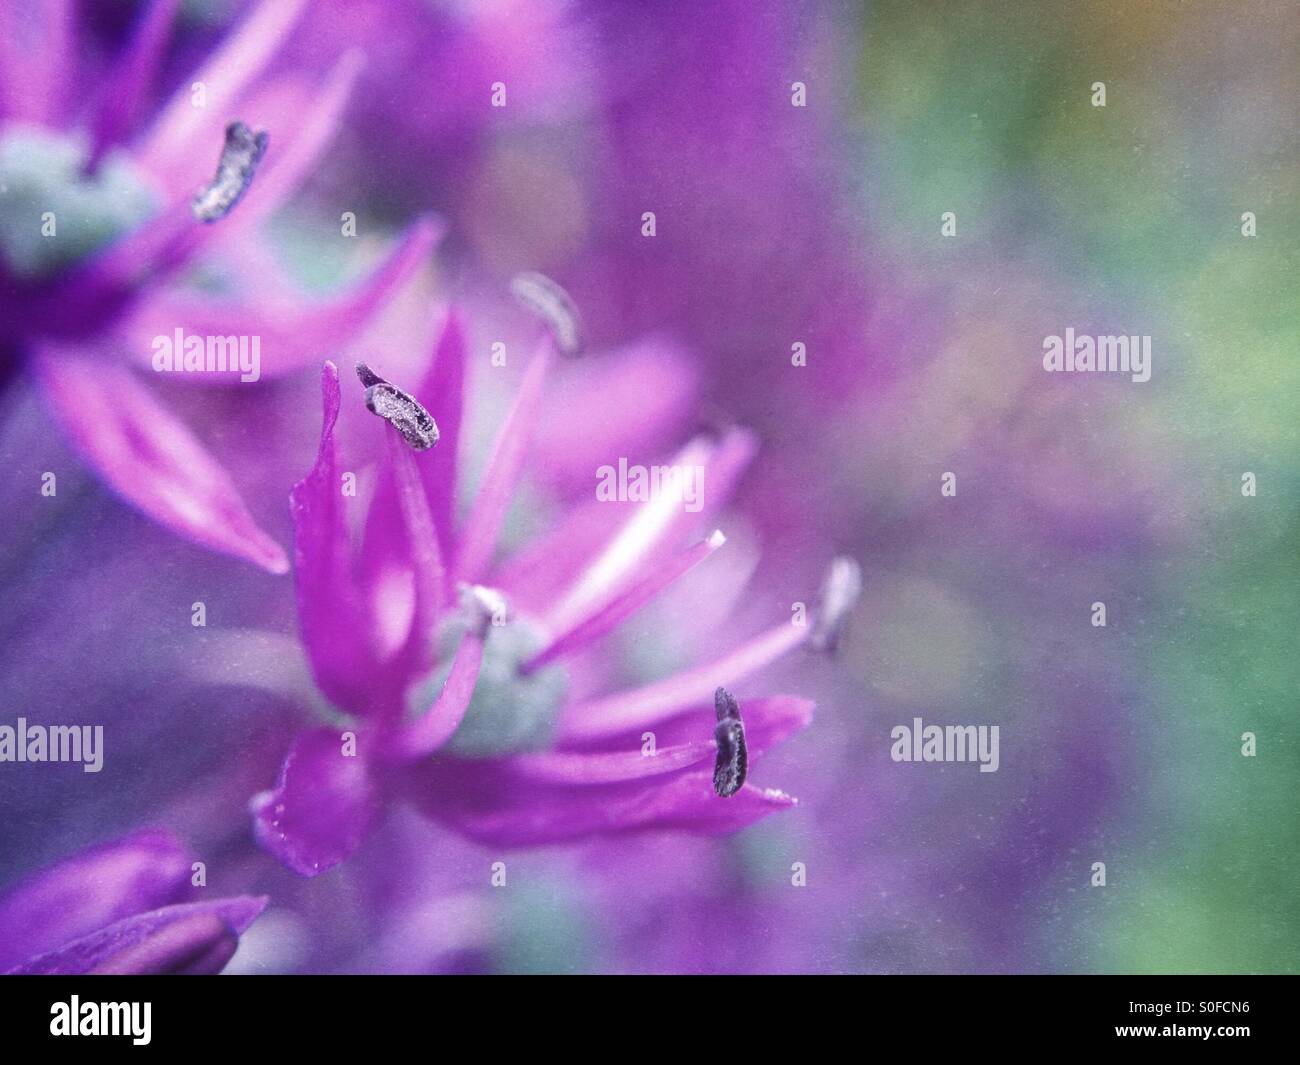 Allium flower Stock Photo